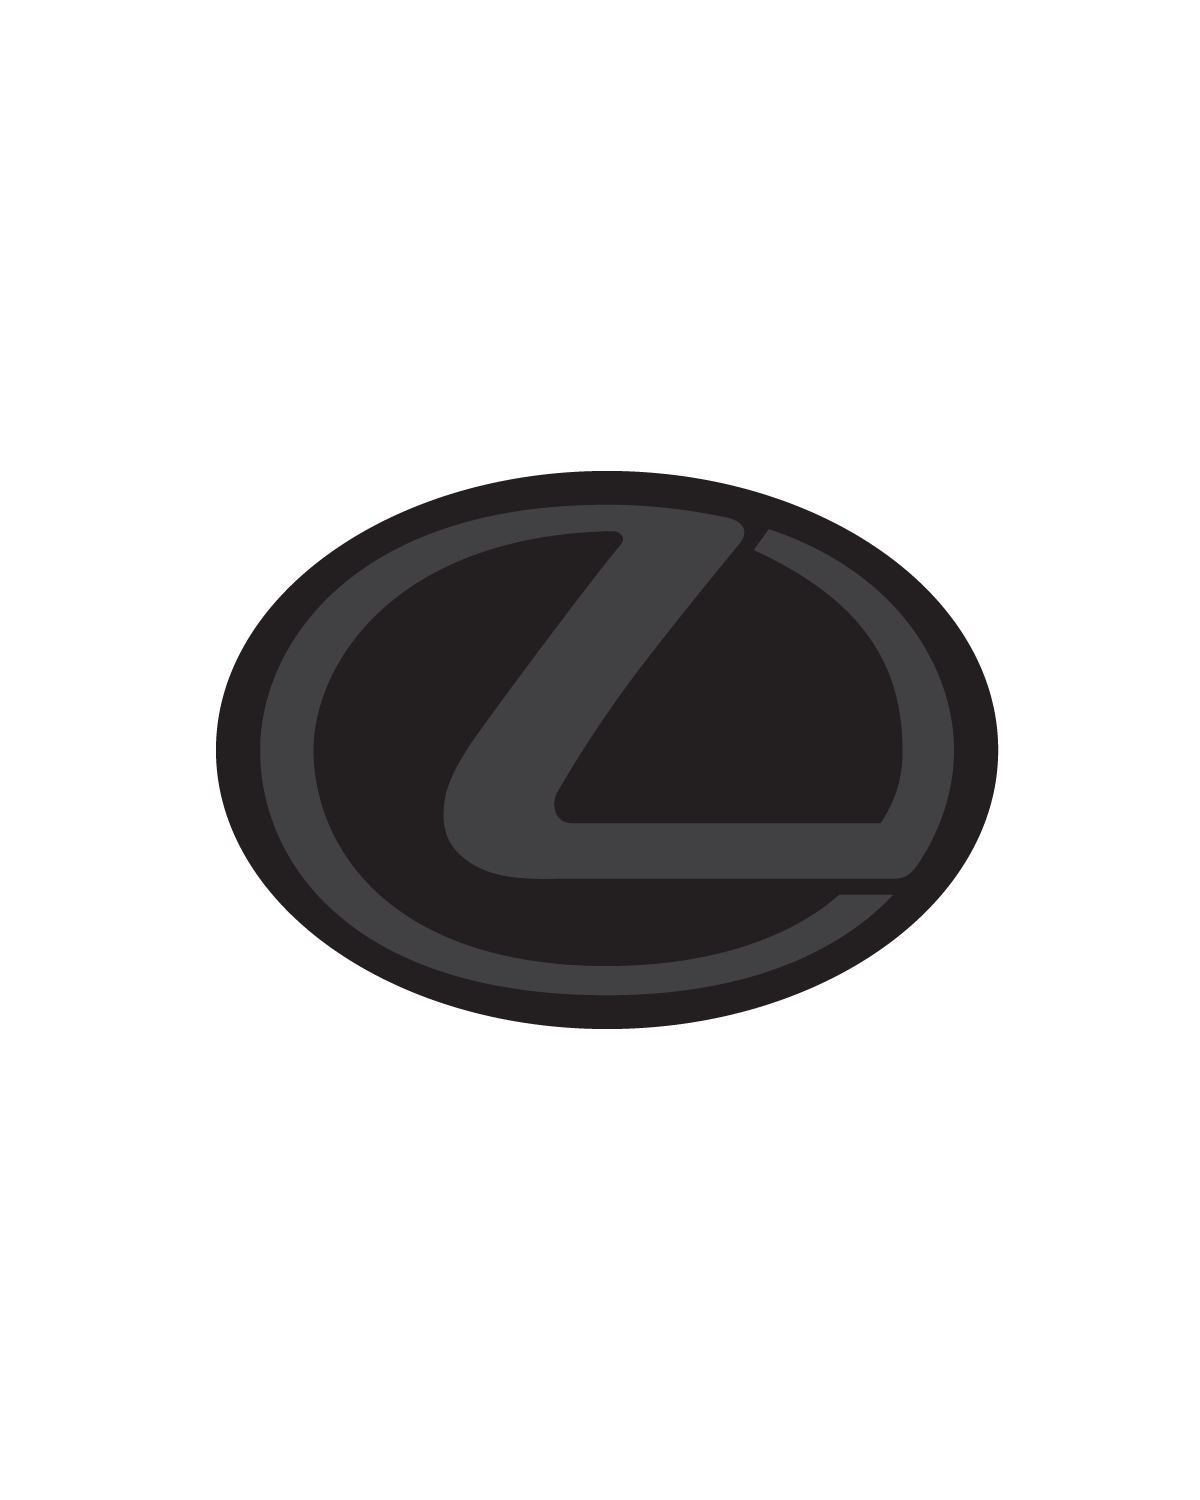 2015-2018 RC Lexus Emblem Front Vinyl Overlay